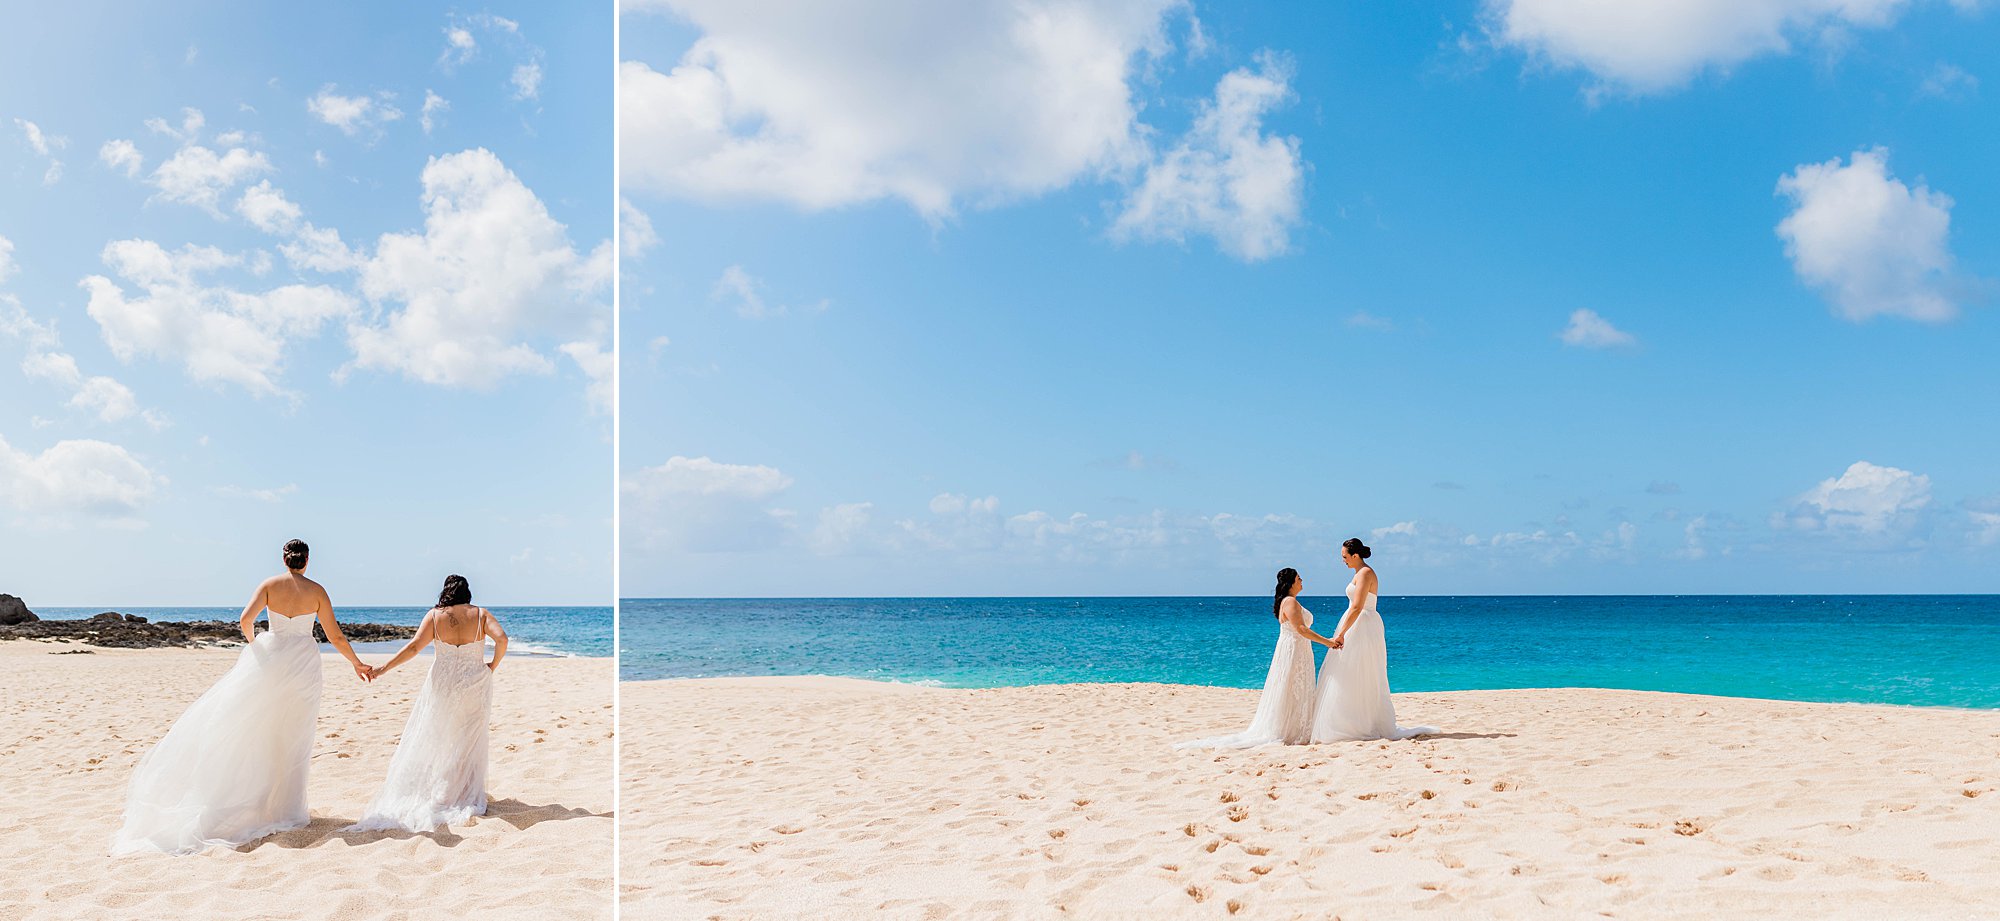 wedding on the beach in hawaii